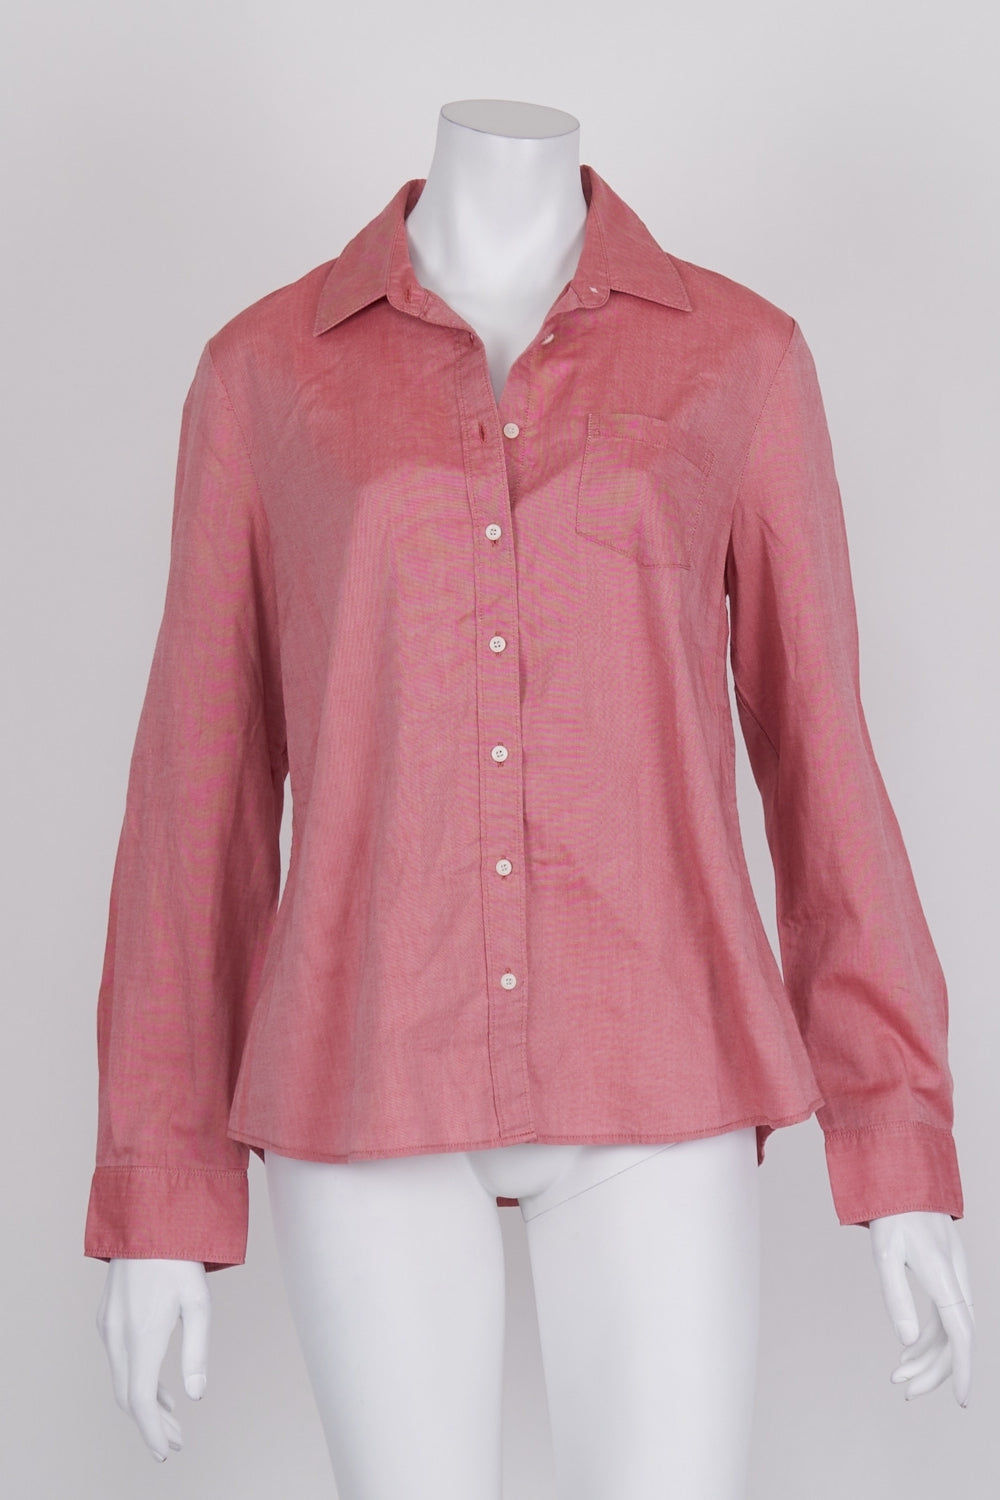 Sportscraft Pink Button Down Shirt 12